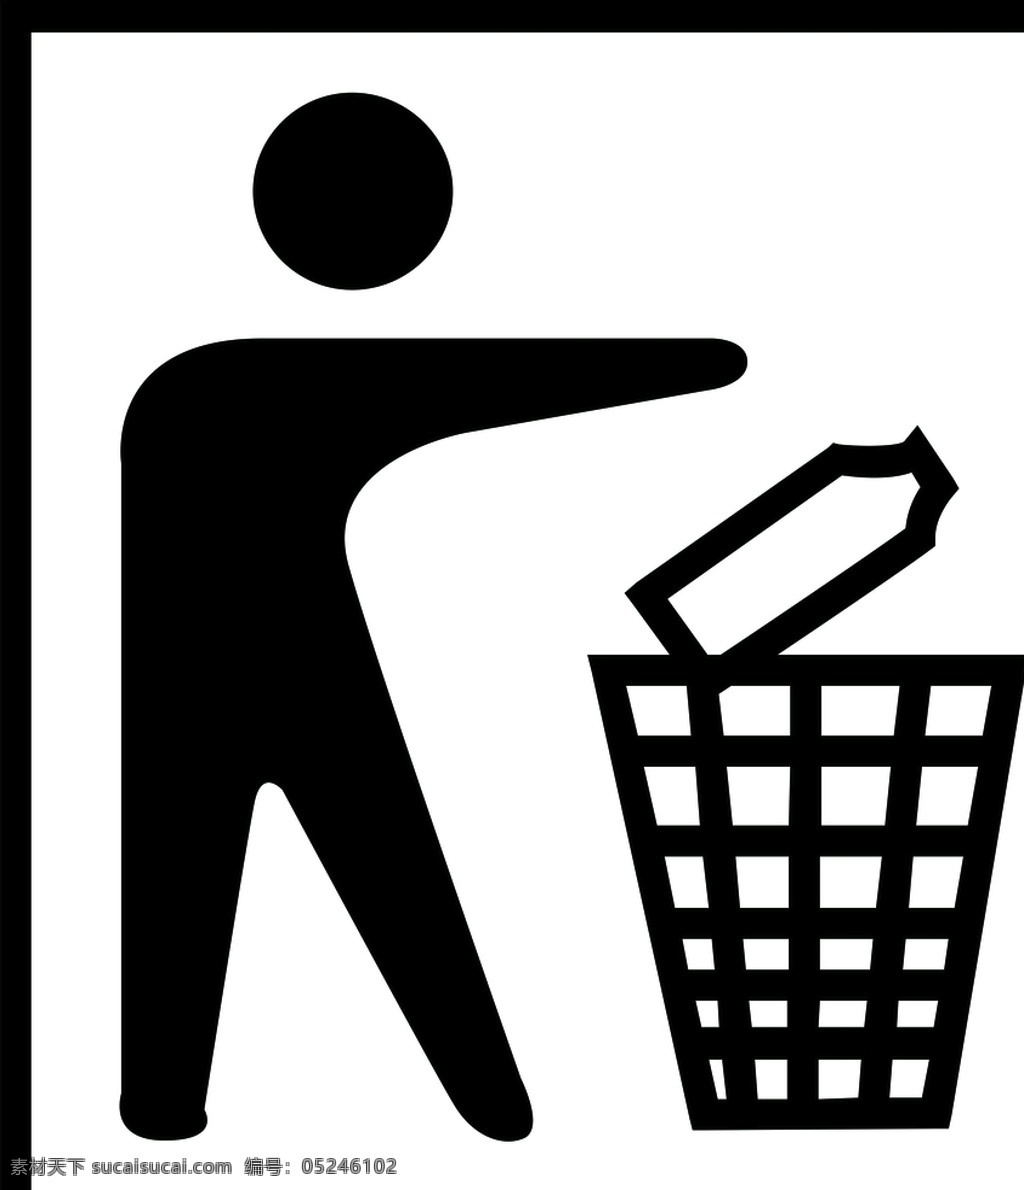 保持环境卫生 包装 图标 警告 提示 纸箱 包装标志 标志图标 公共标识标志